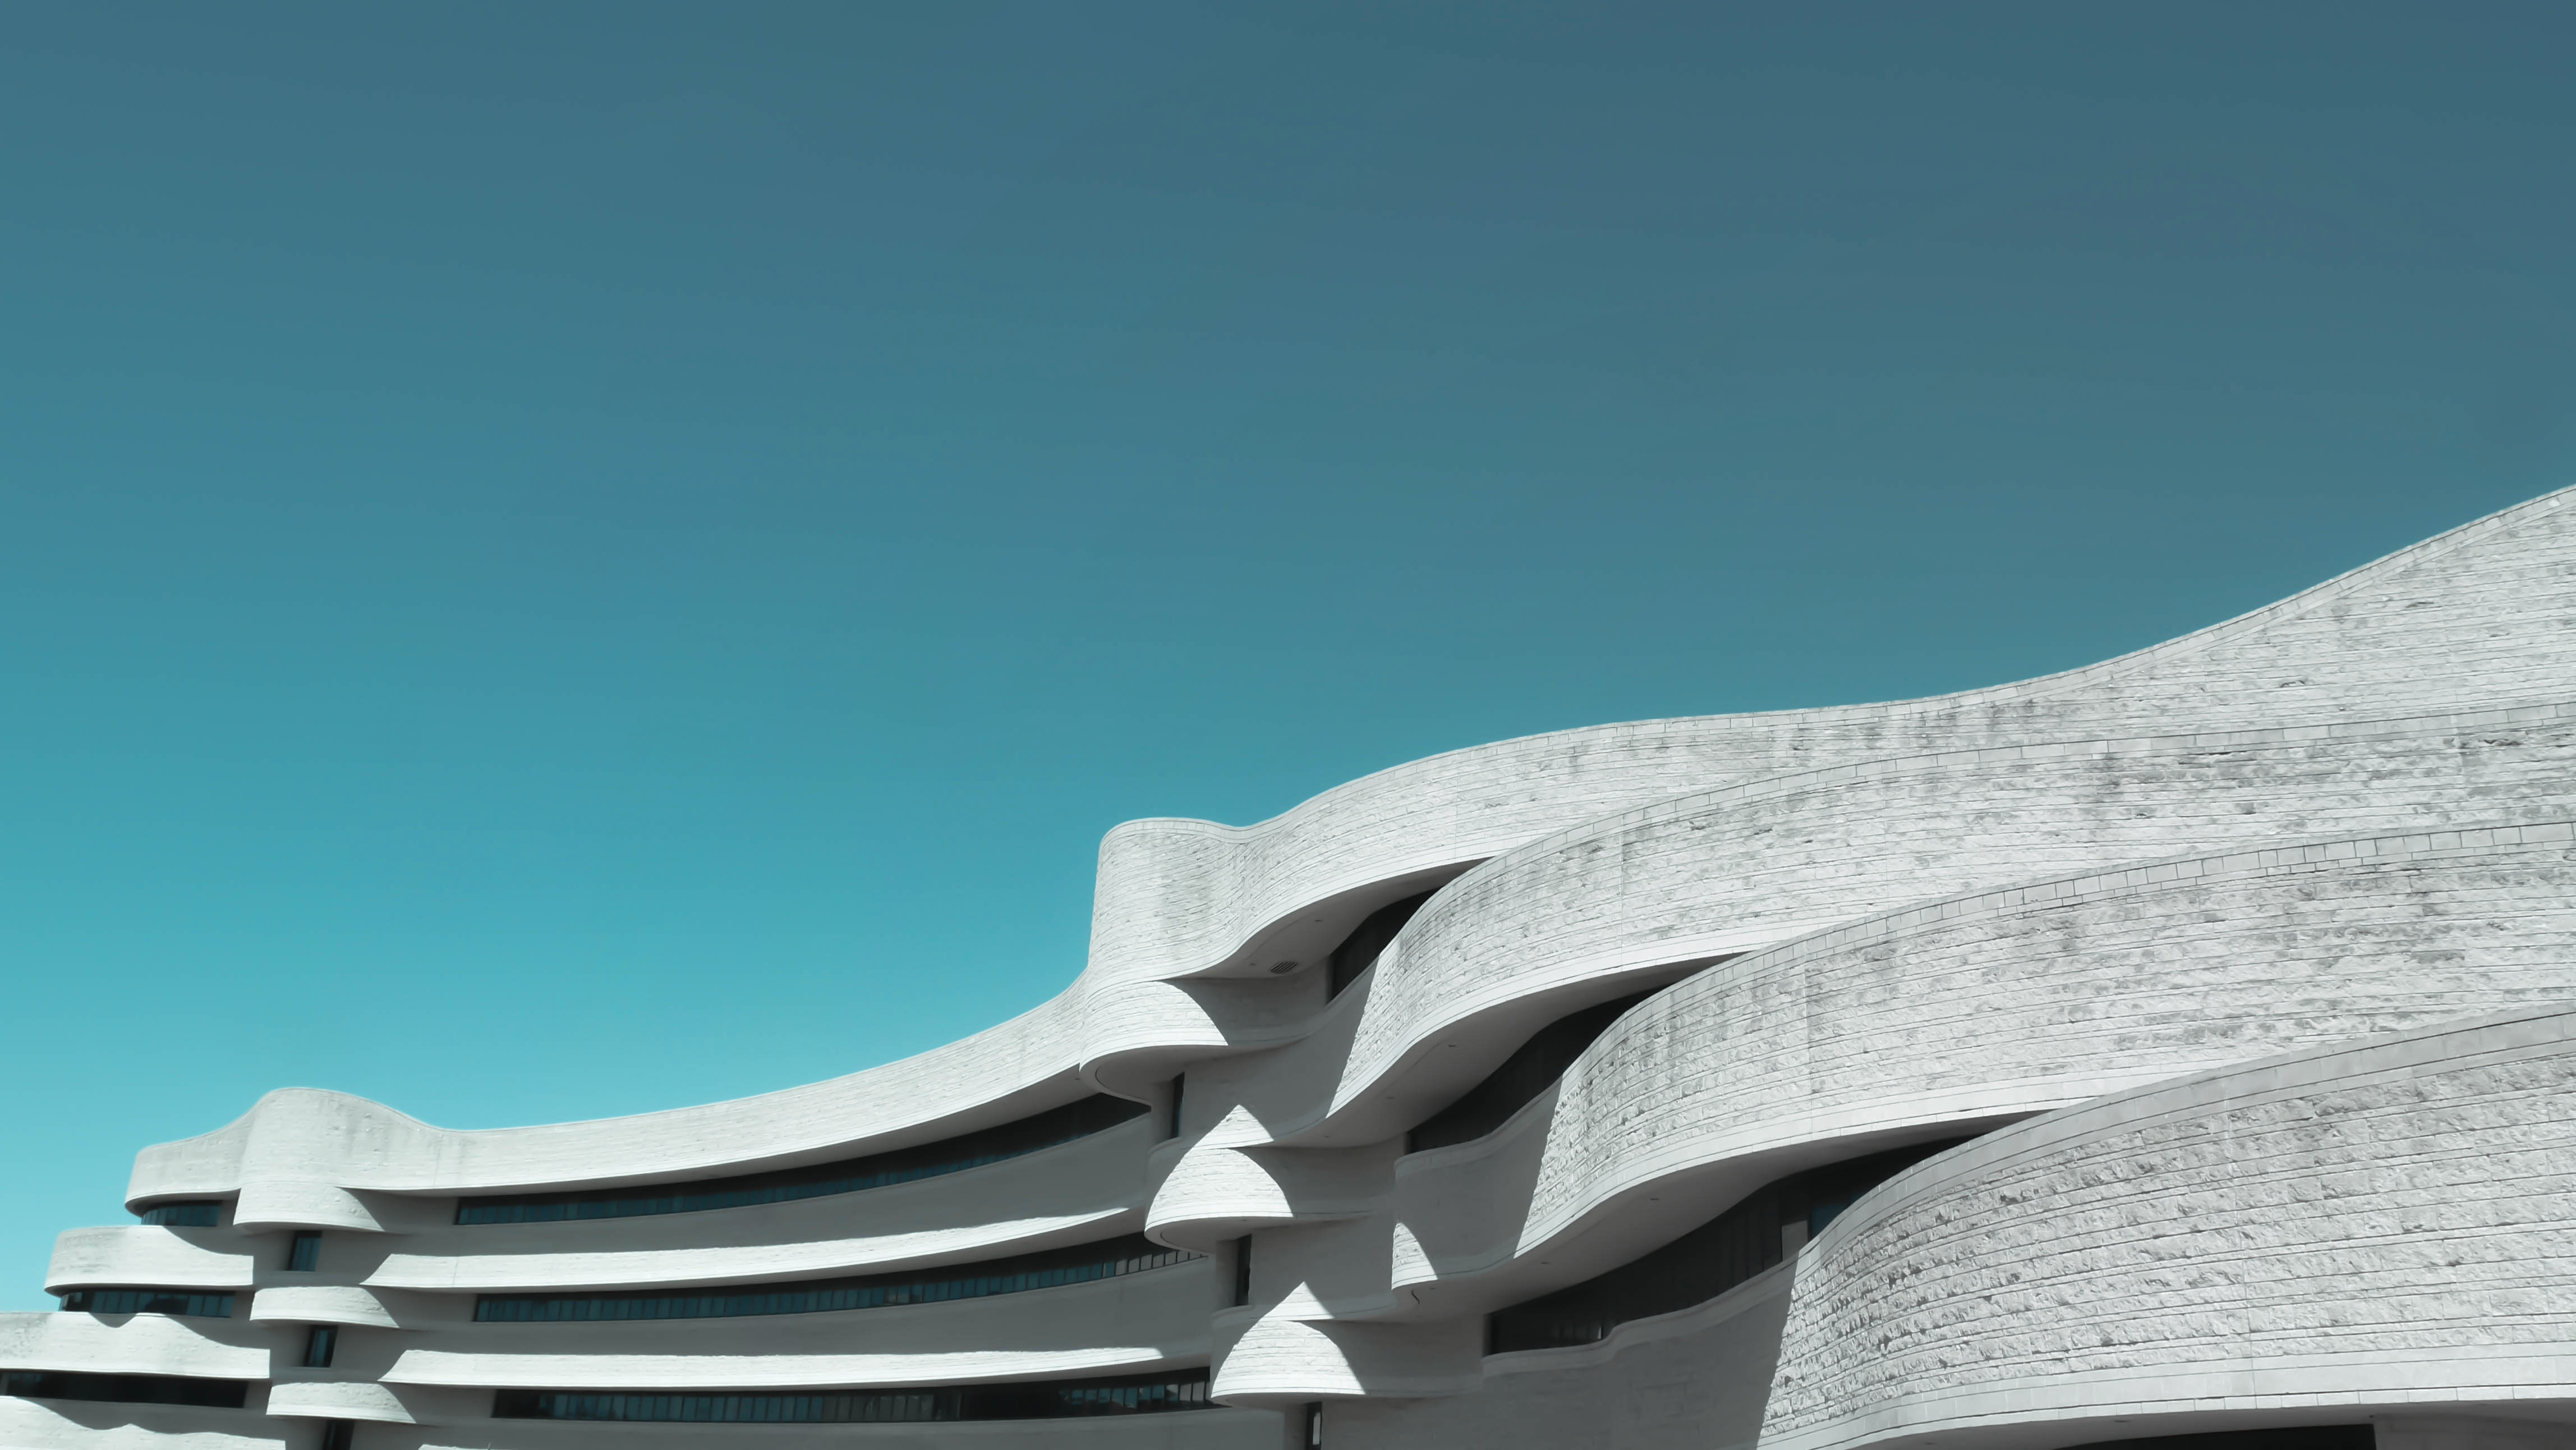 minimalist architecture wallpaper,architecture,blue,sky